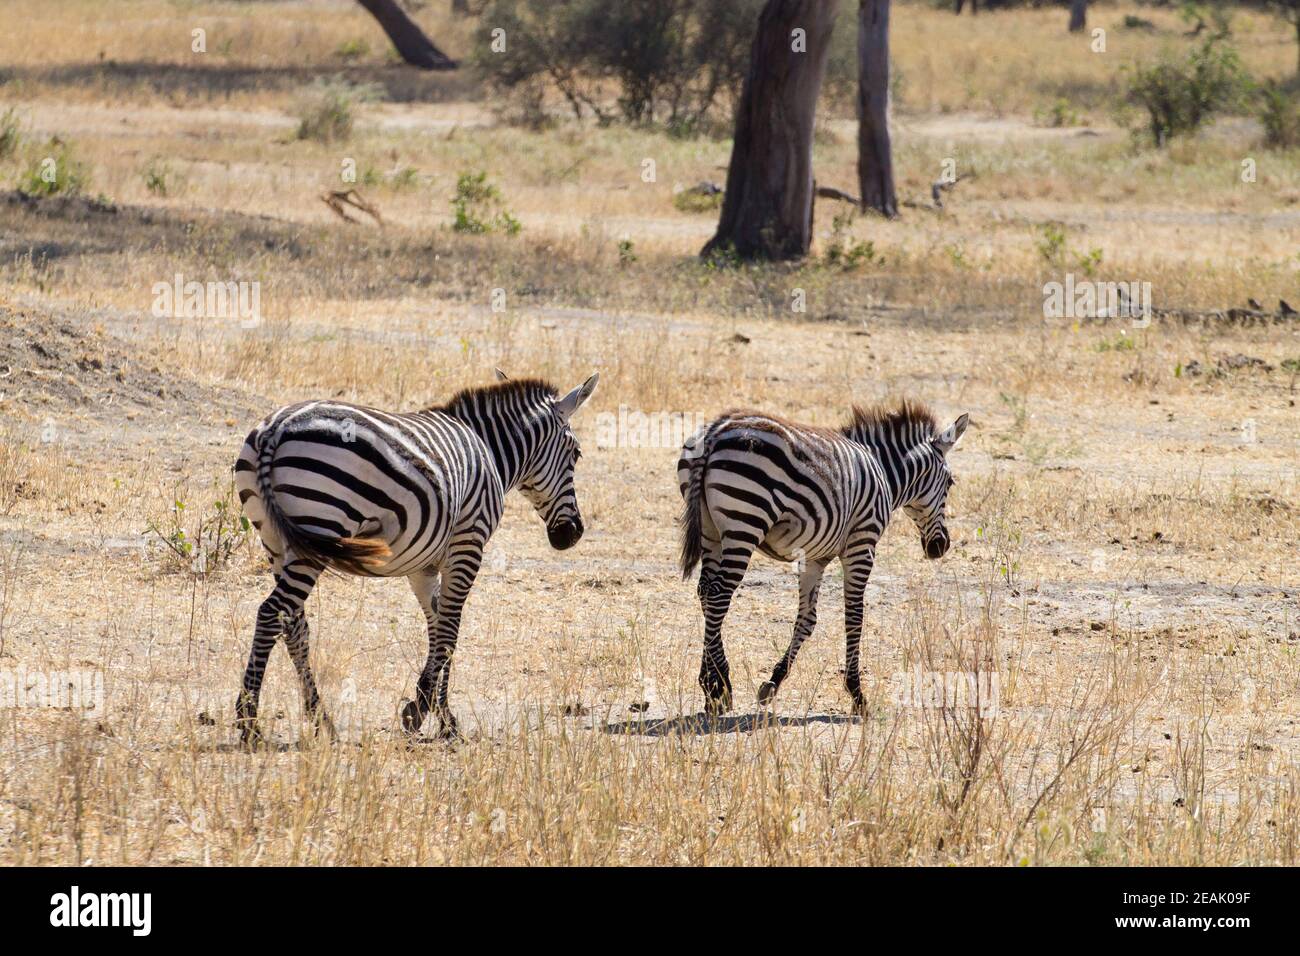 Zebras close up, Tarangire National Park, Tanzania Stock Photo